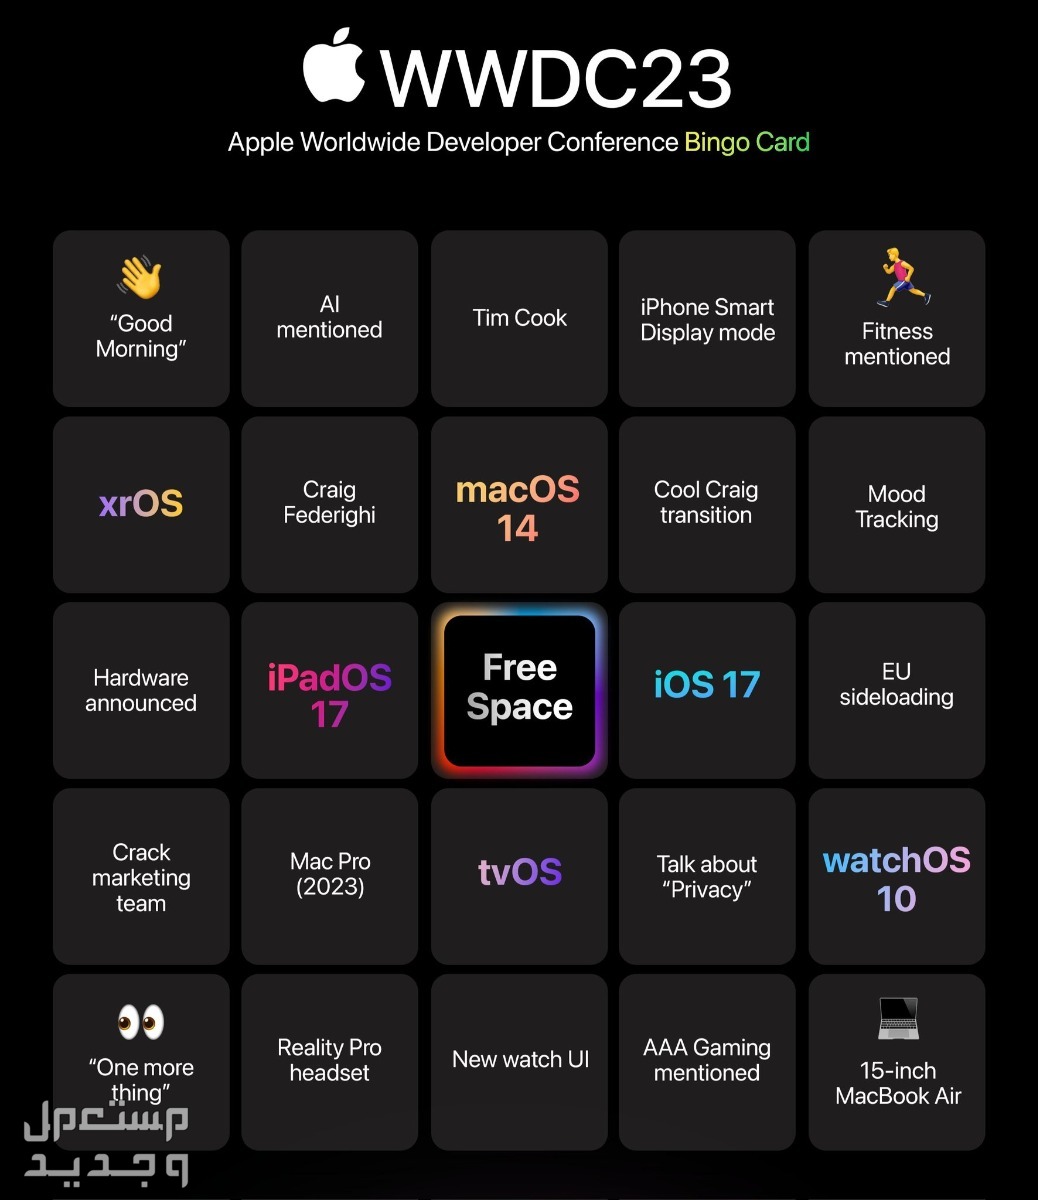 ما الجديد الذي يقدمه نظام ابل الجديد iOS 17 في السعودية